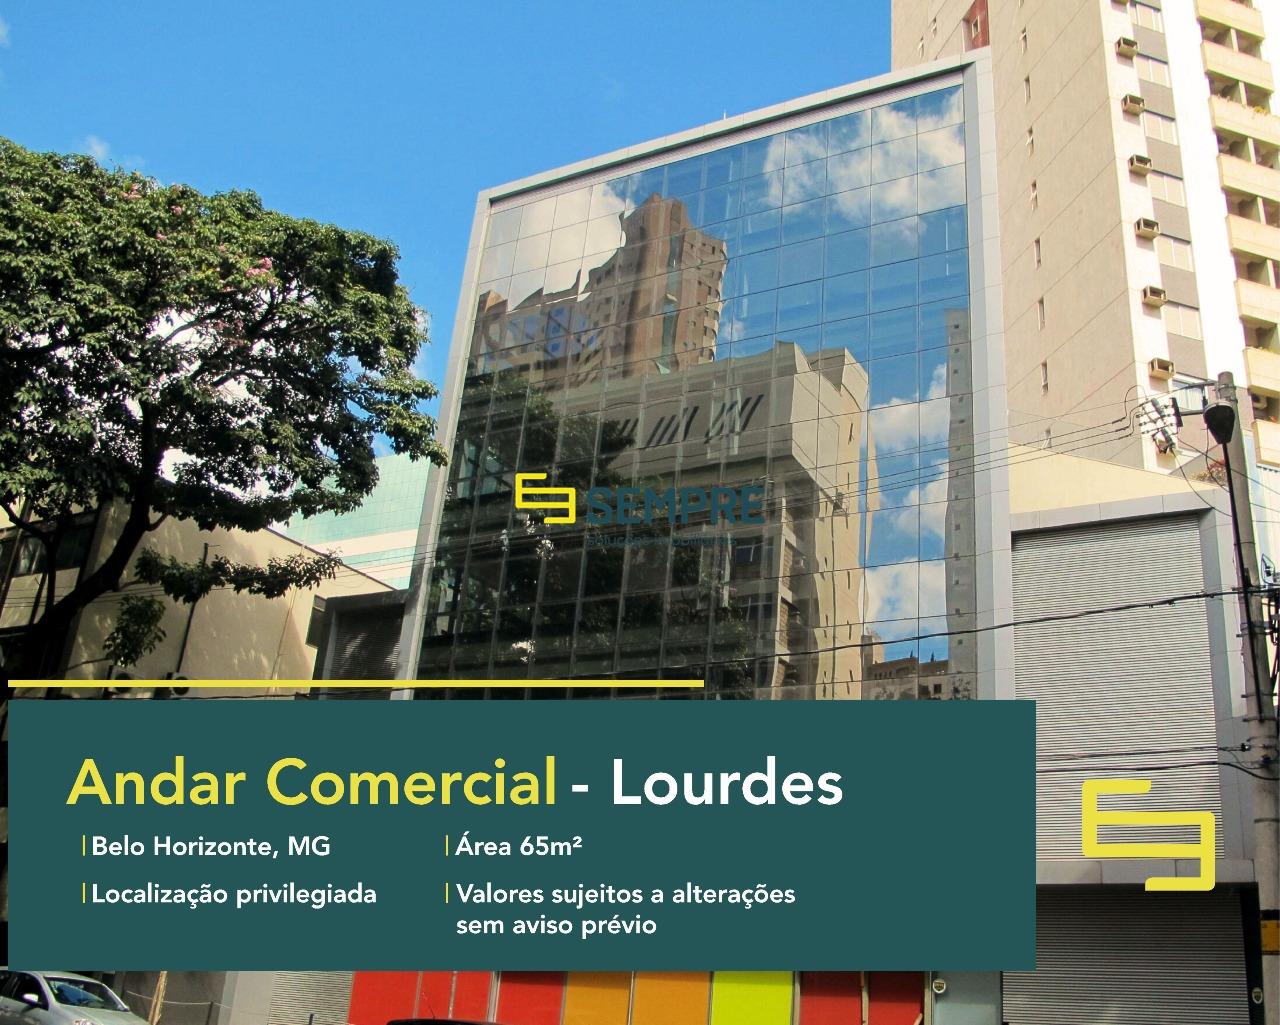 Andar corrido no bairro Lourdes para alugar, em Belo Horizonte. O estabelecimento comercial conta, sobretudo, com área de 65 m².